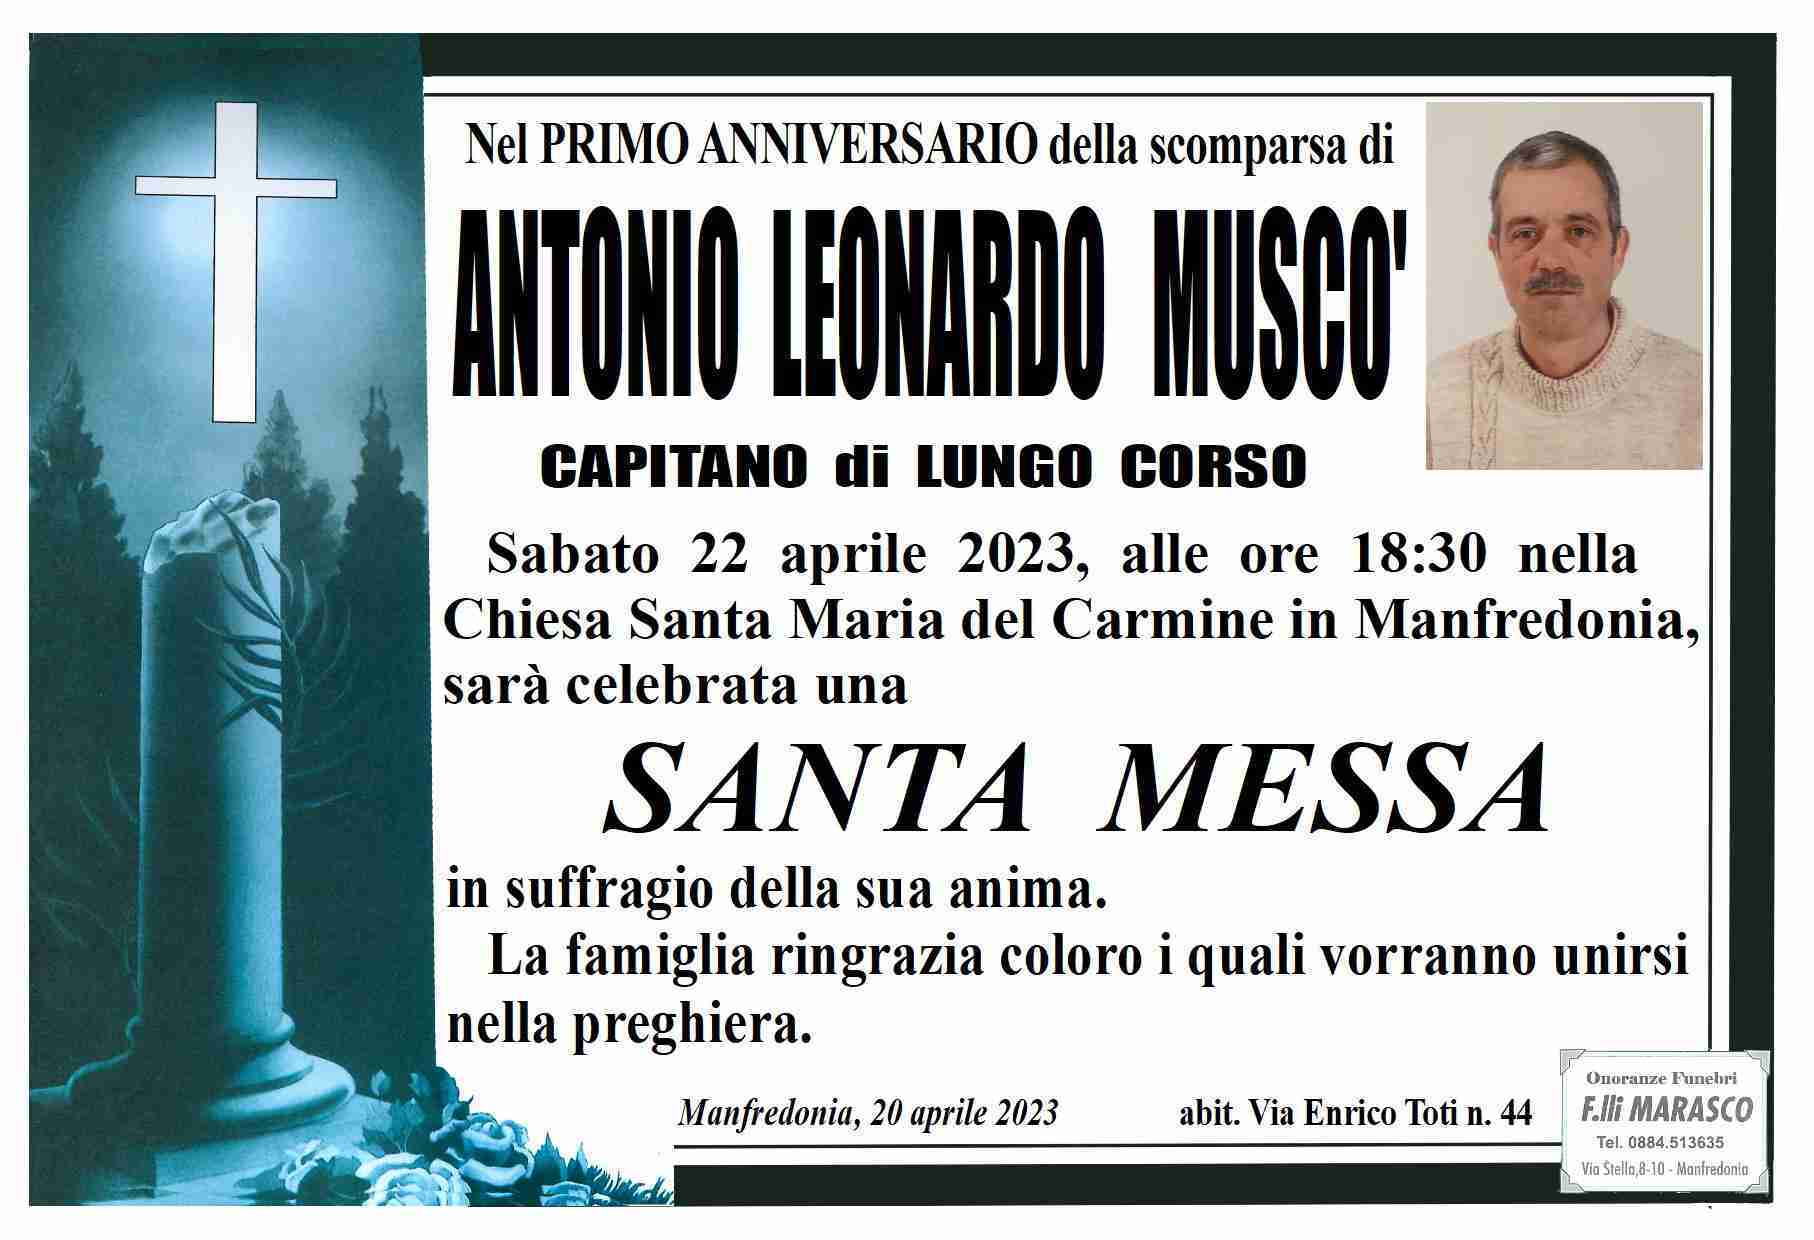 Antonio Leonardo Muscò